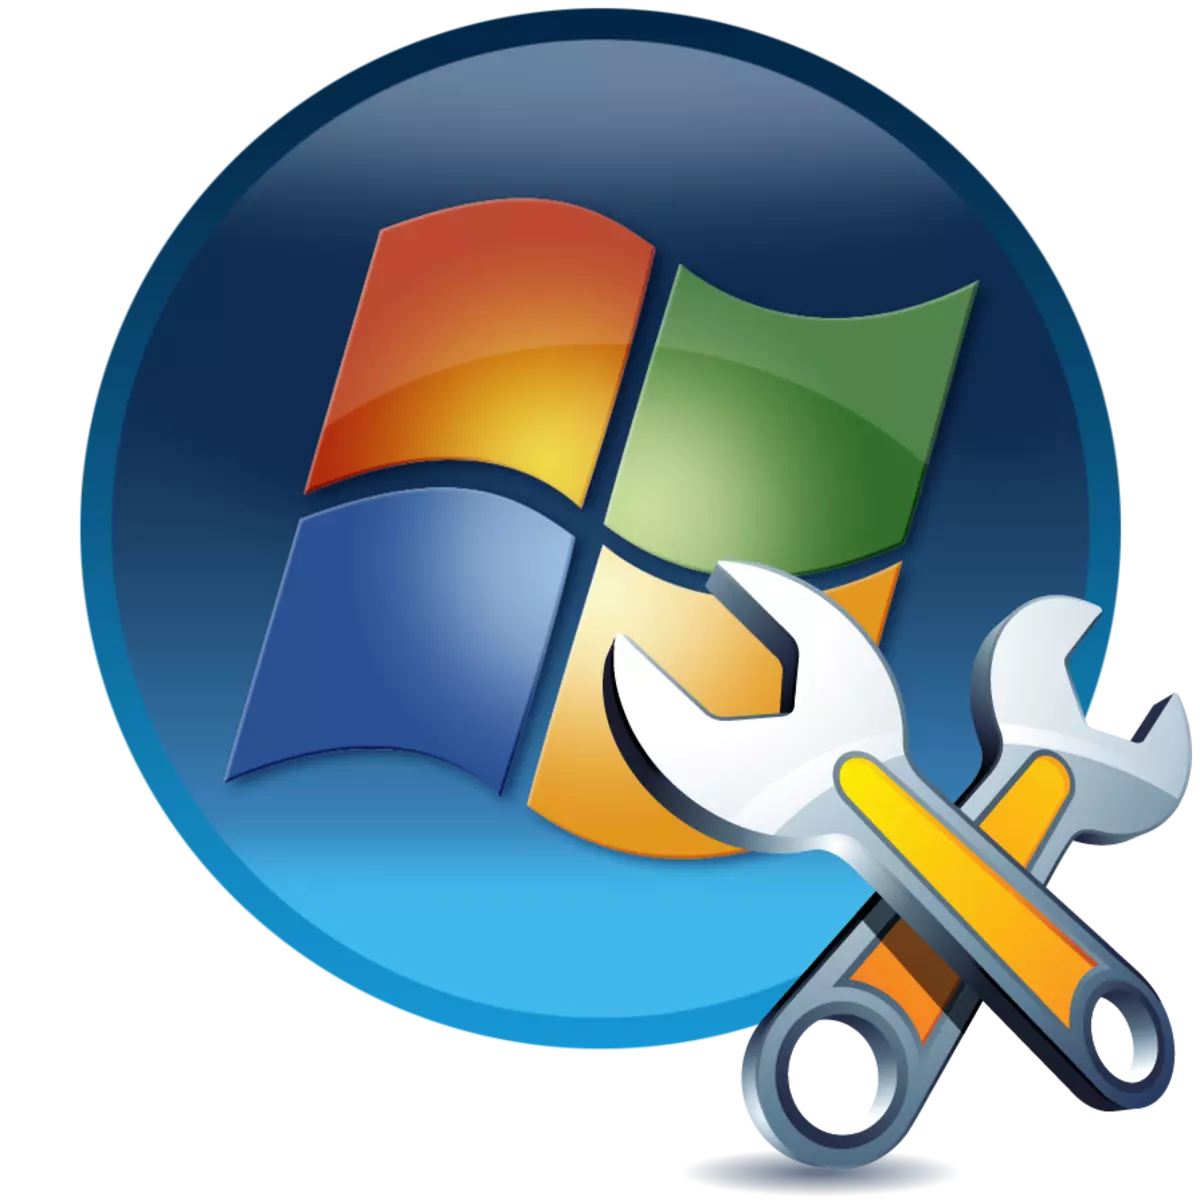 Ho lokisa bootsoa ho Windows 7